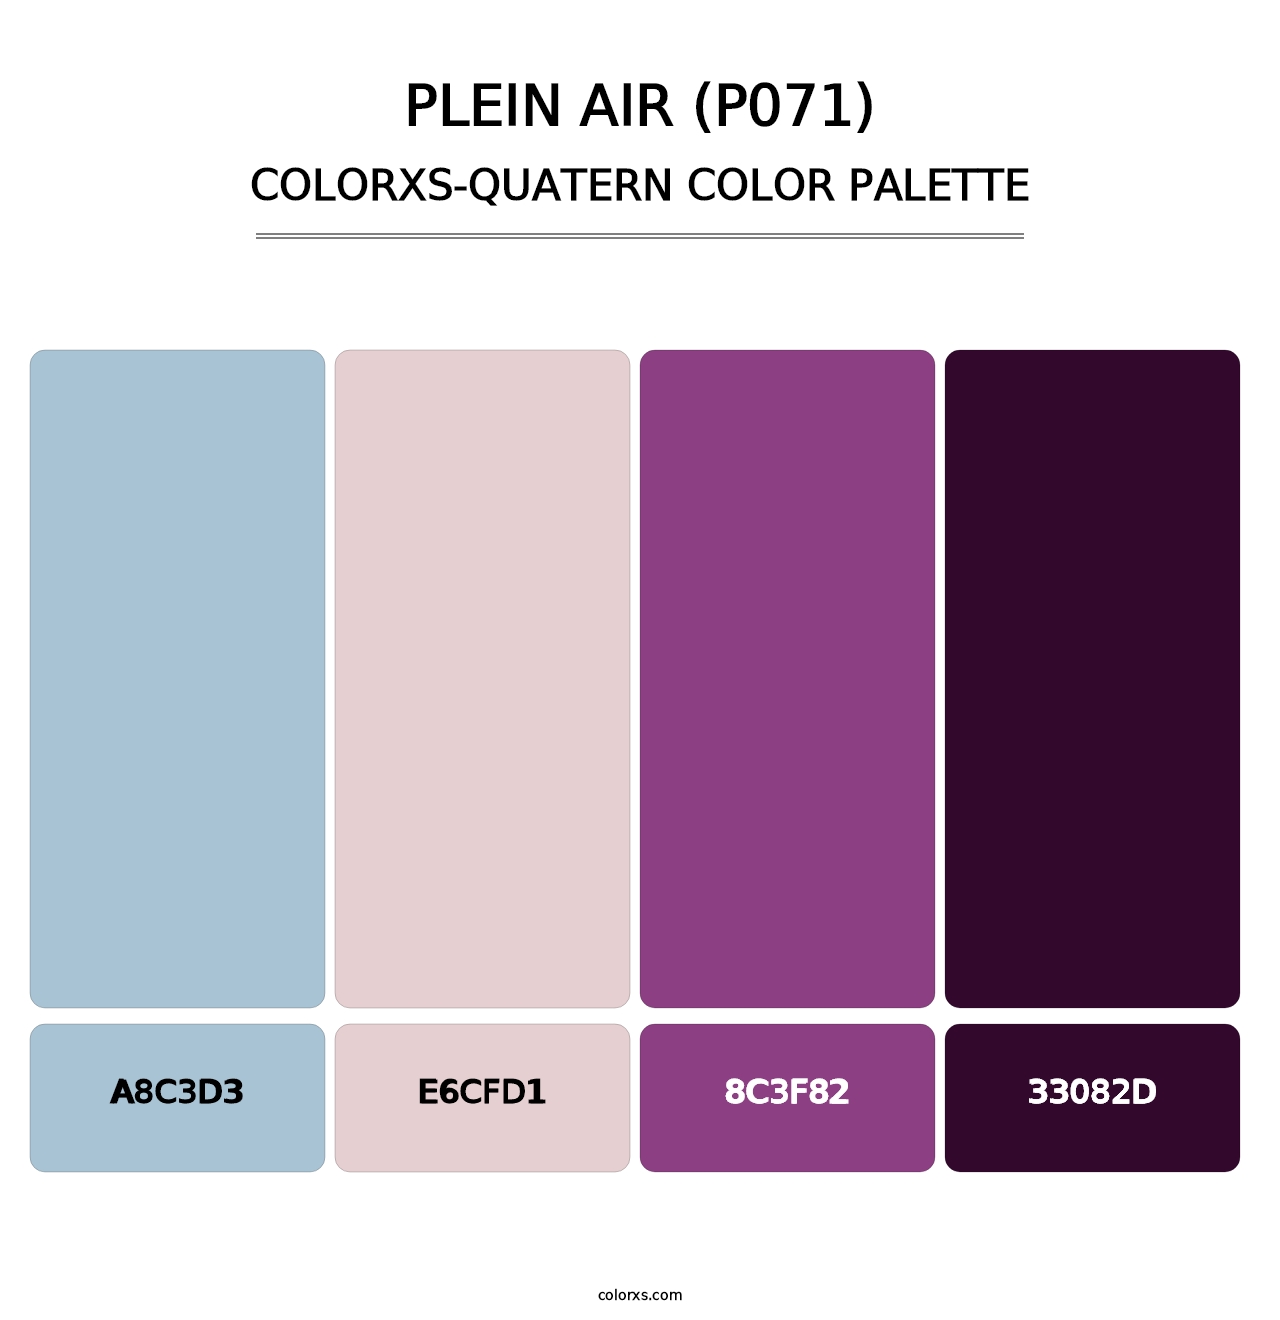 Plein Air (P071) - Colorxs Quatern Palette